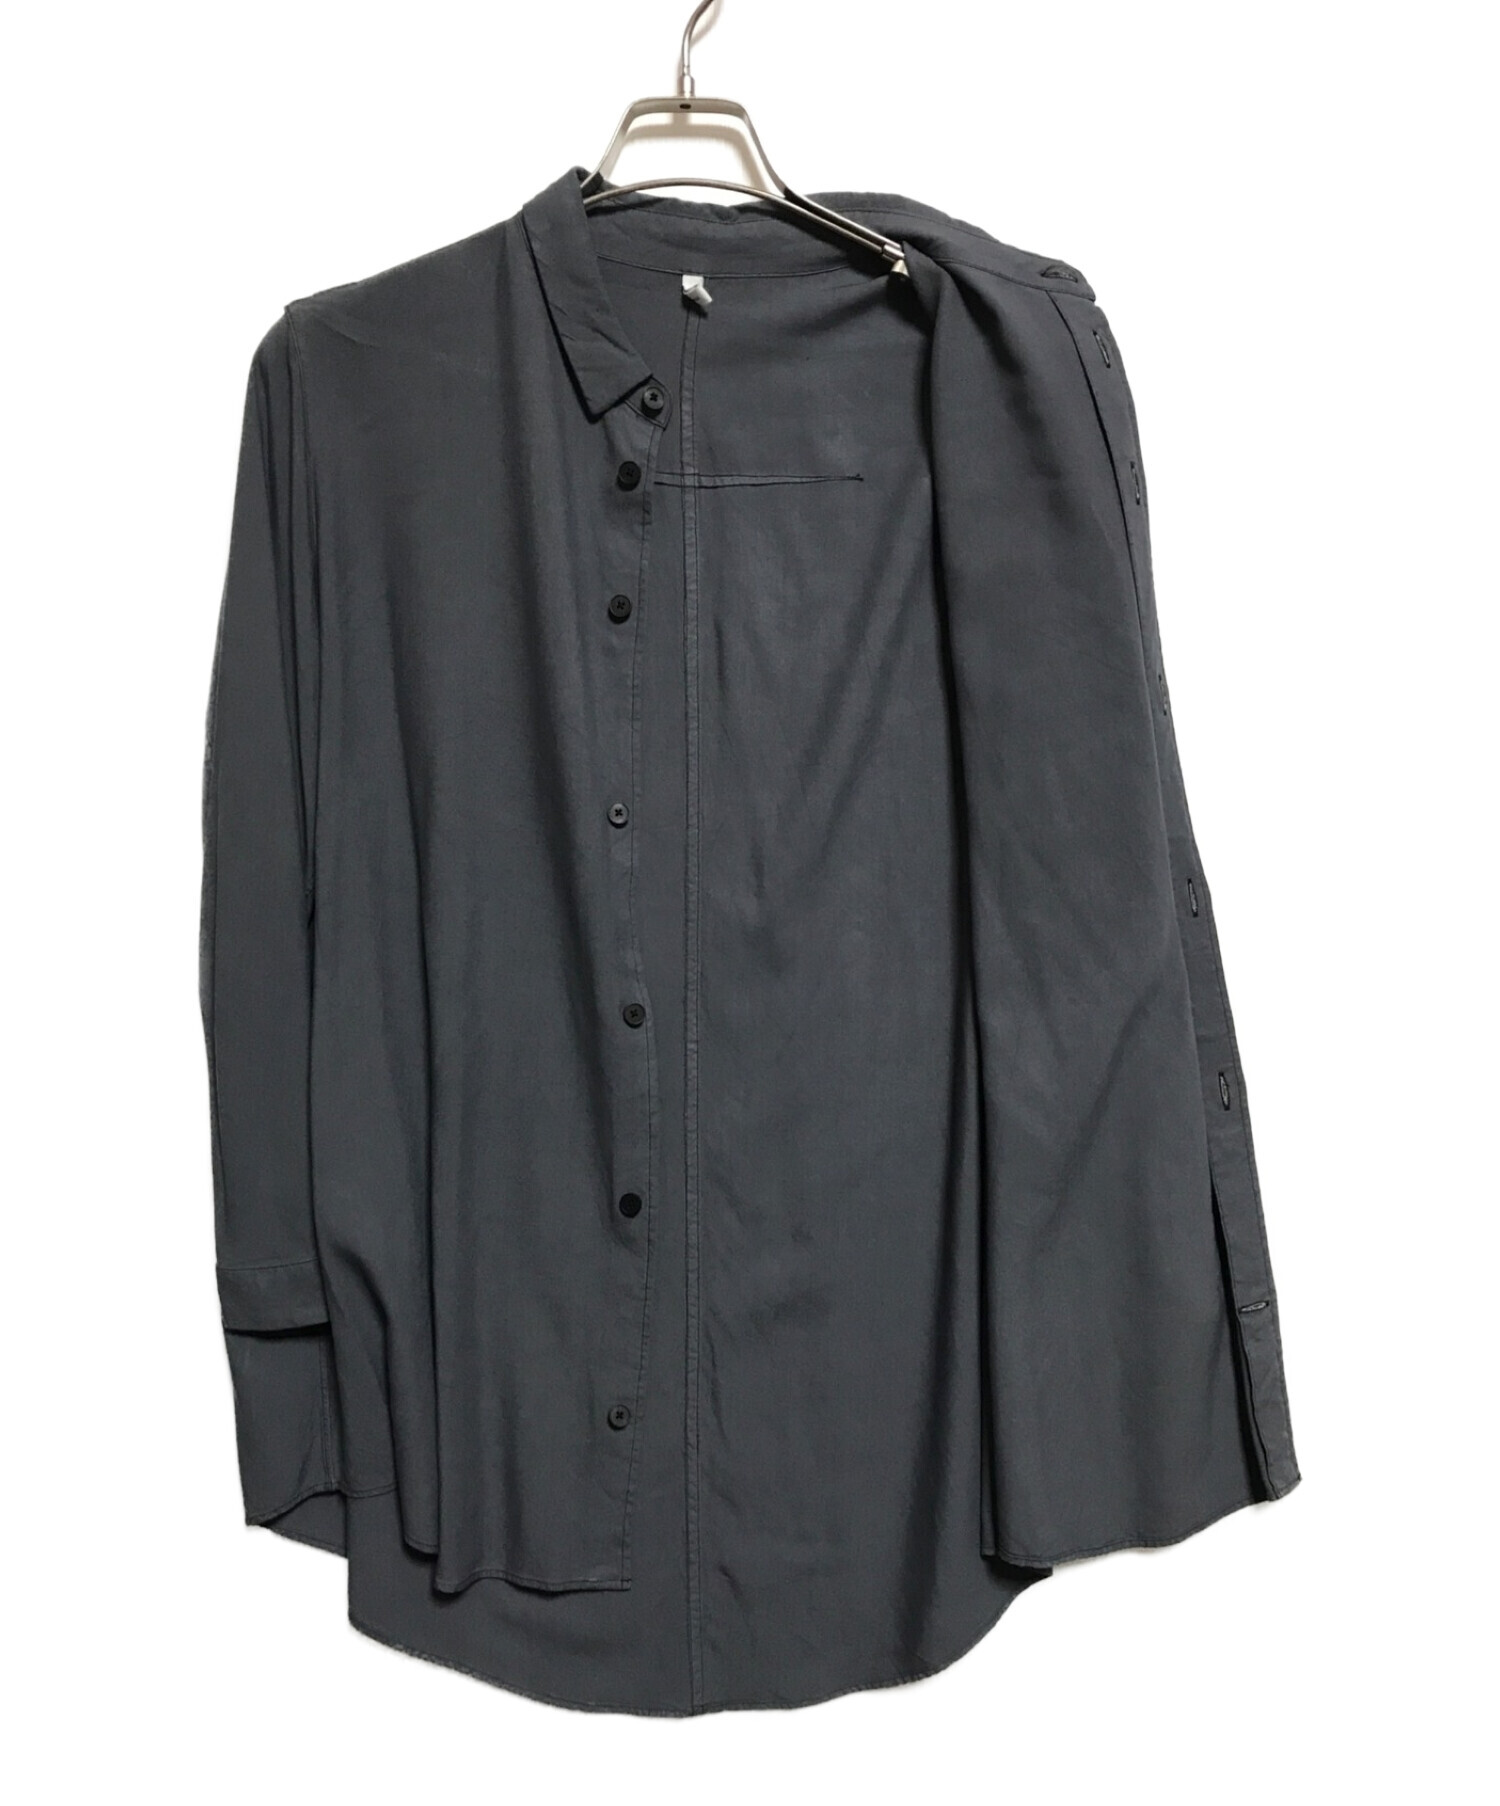 FIRMUM (フィルマム) ラフコットンシーチング スモールカラーワイドシャツ グレー サイズ:XS